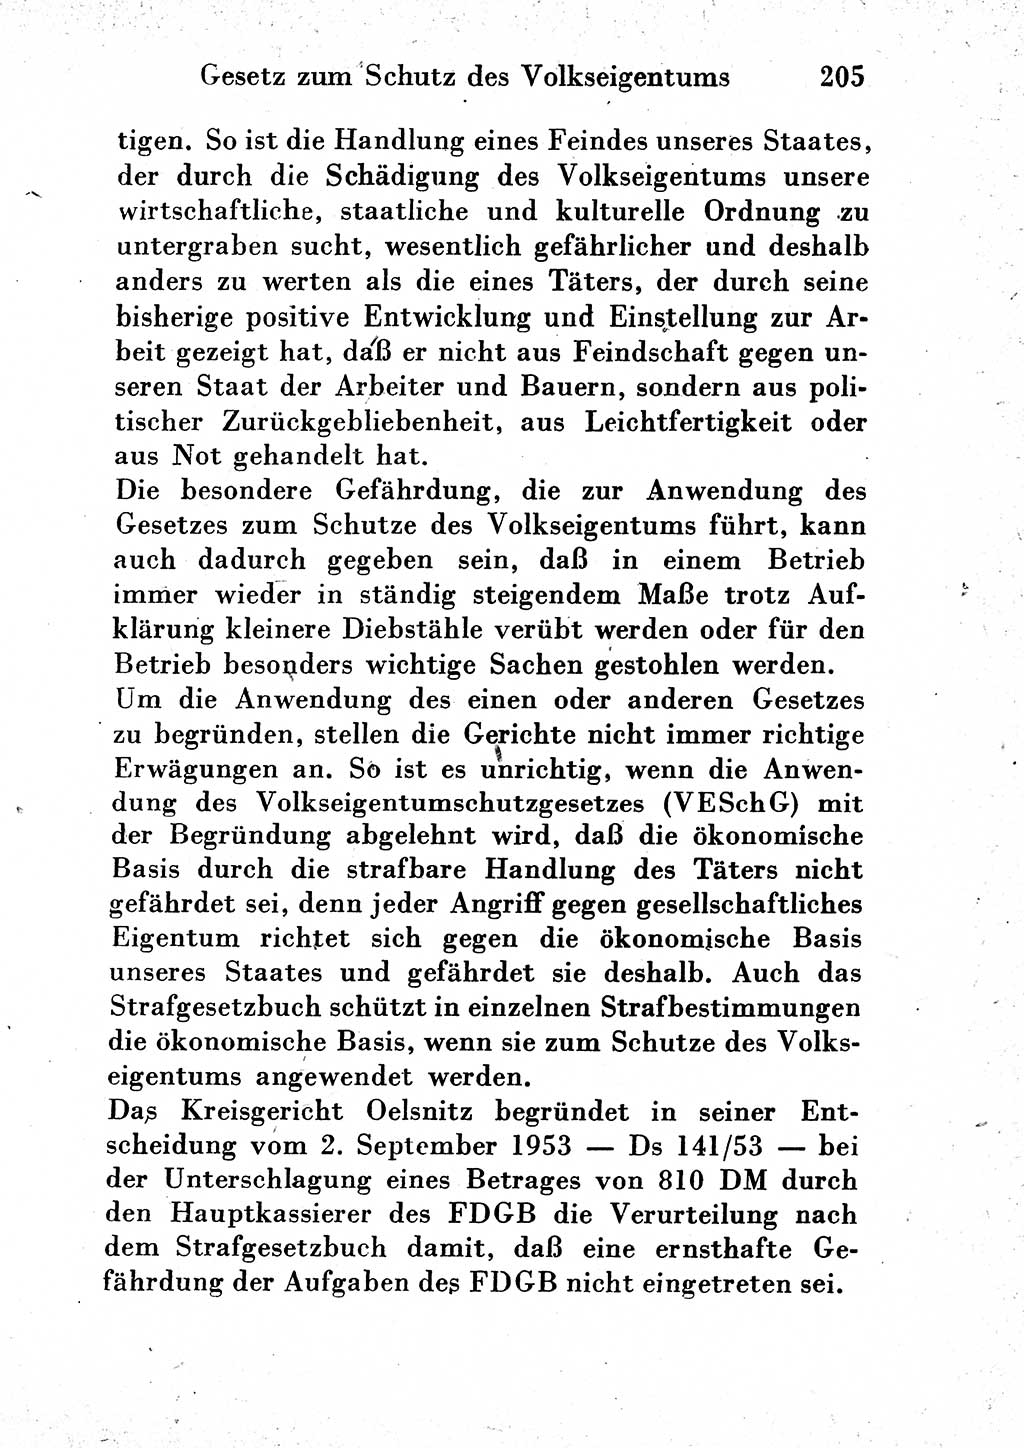 Strafgesetzbuch (StGB) und andere Strafgesetze [Deutsche Demokratische Republik (DDR)] 1954, Seite 205 (StGB Strafges. DDR 1954, S. 205)